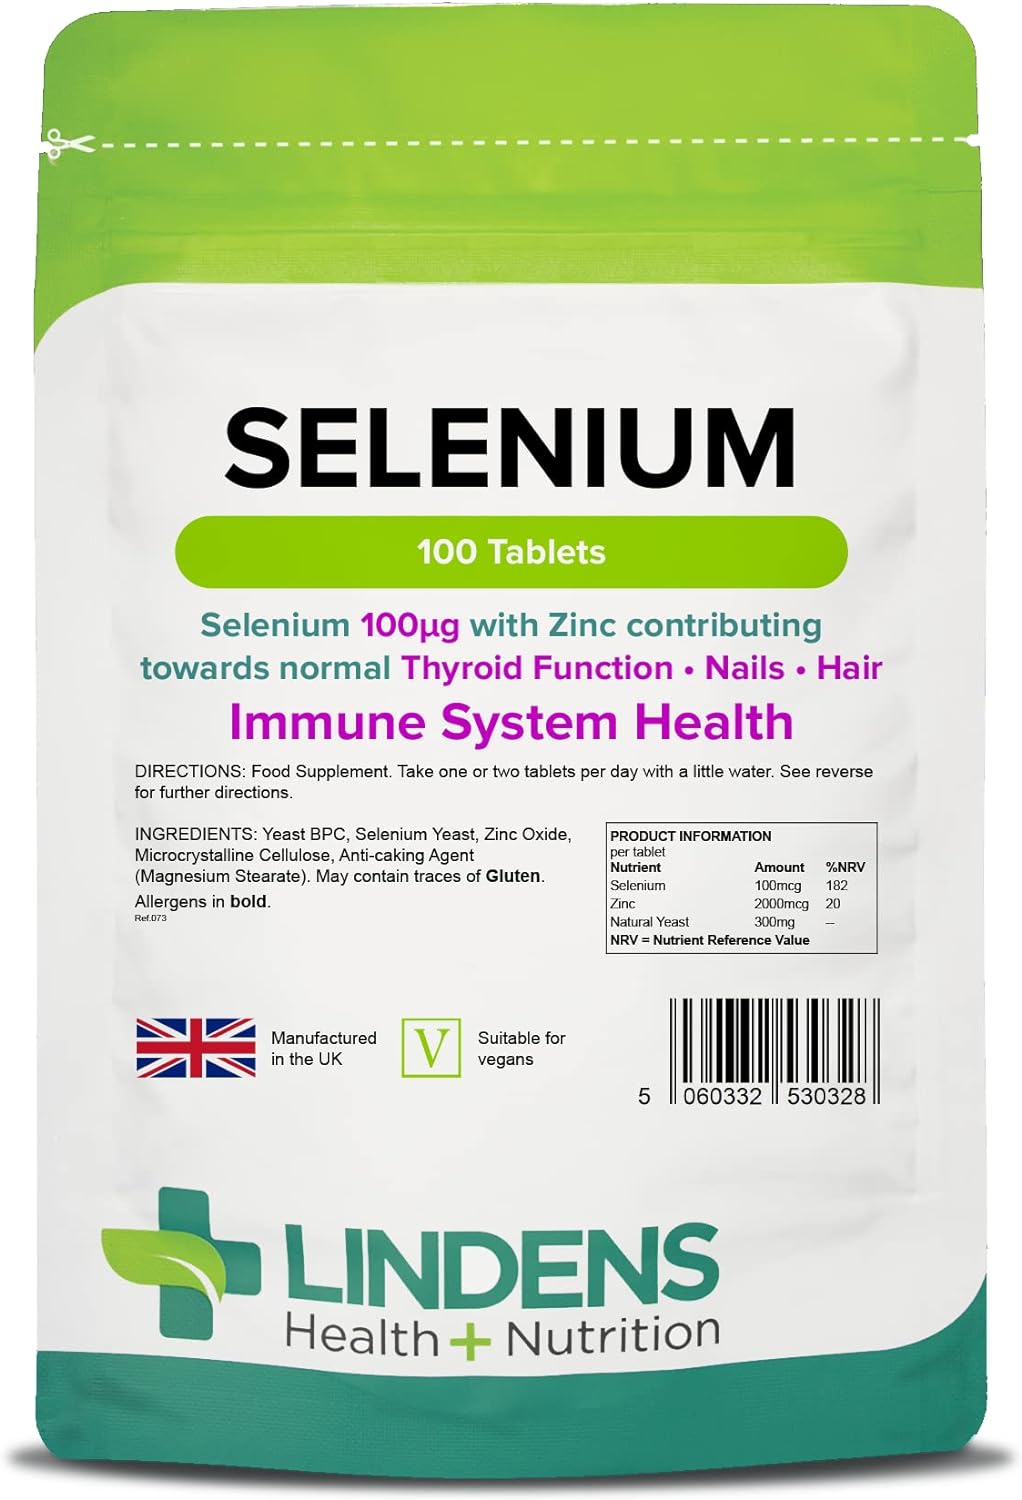 Lindens Selenium 100mcg & Zinc - 100 Vegan Tablets - Healthy Skin, Nai74 Grams